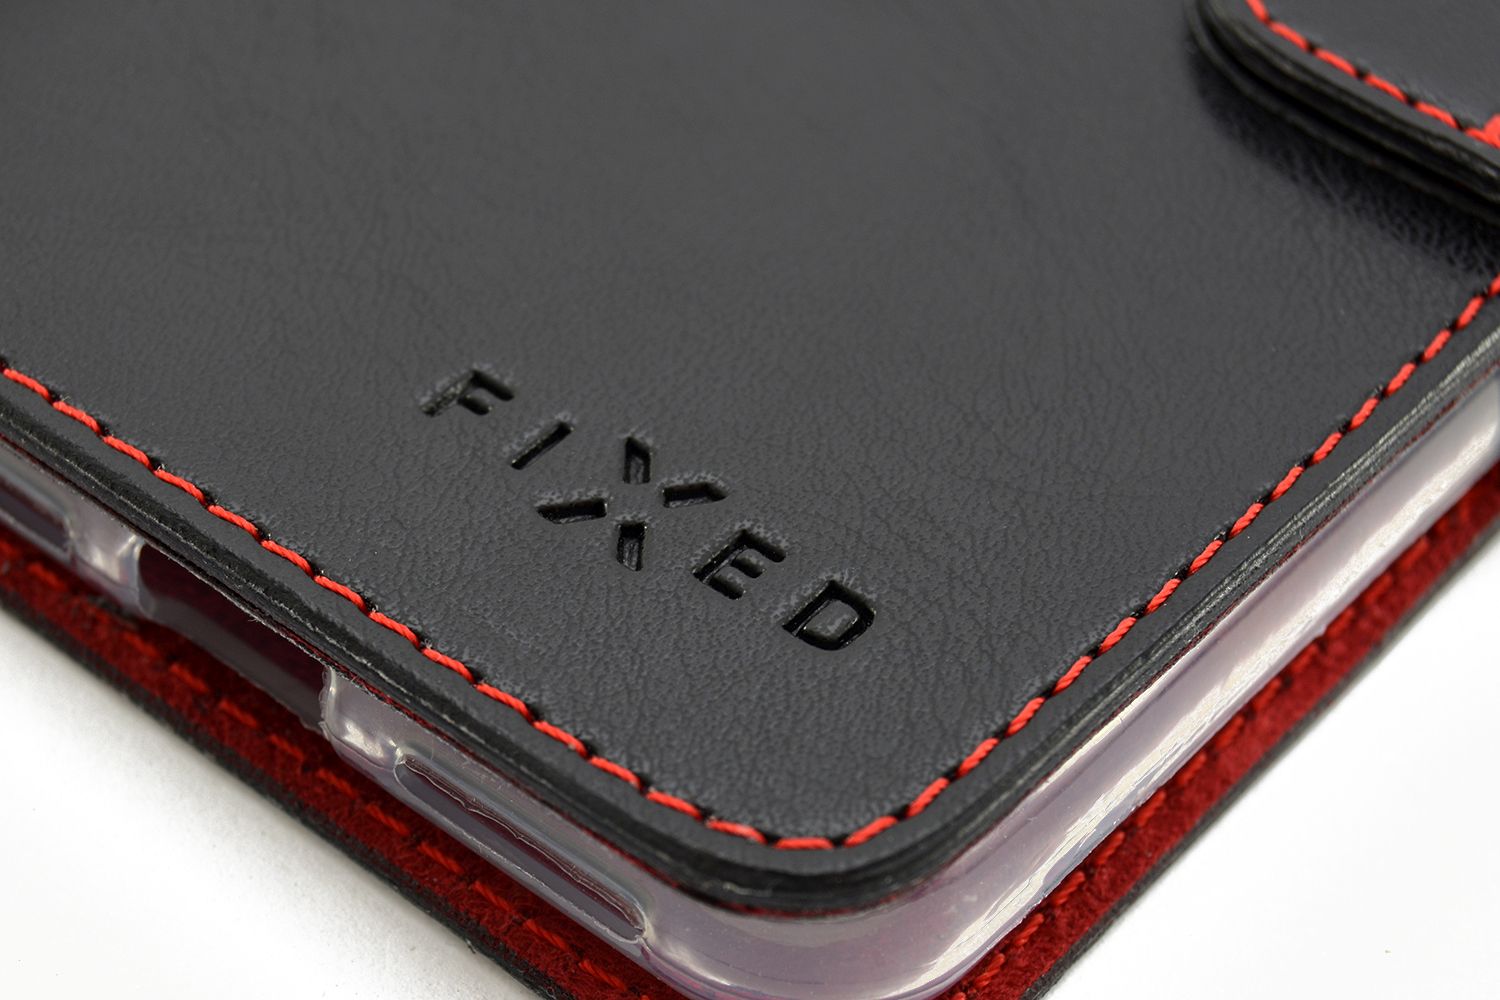 Flipové puzdro FIXED FIT pre Xiaomi Redmi 9, čierna